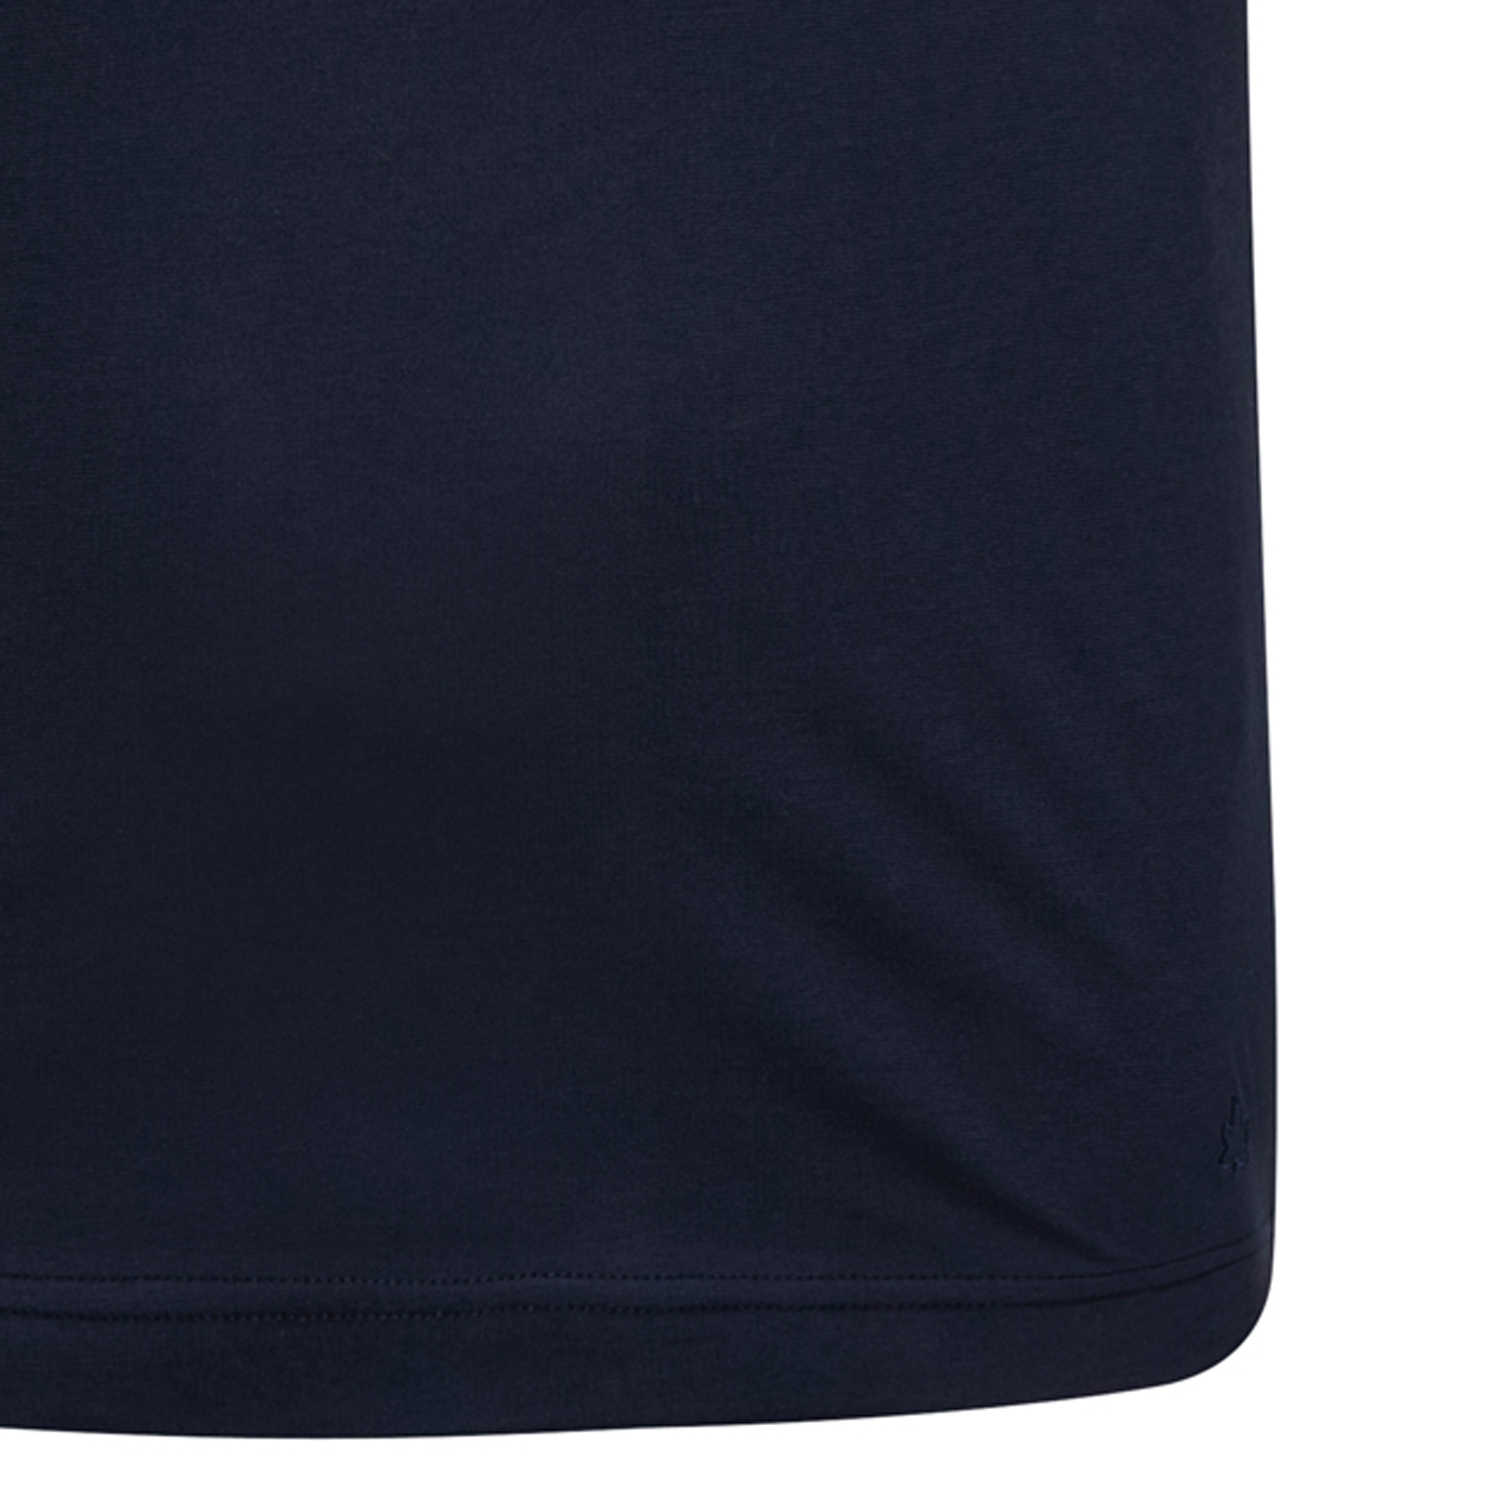 Achselshirt XXL in dunkelblau für Herren mit Rundhals von Ahorn Sportswear in großen Größen bis 10XL